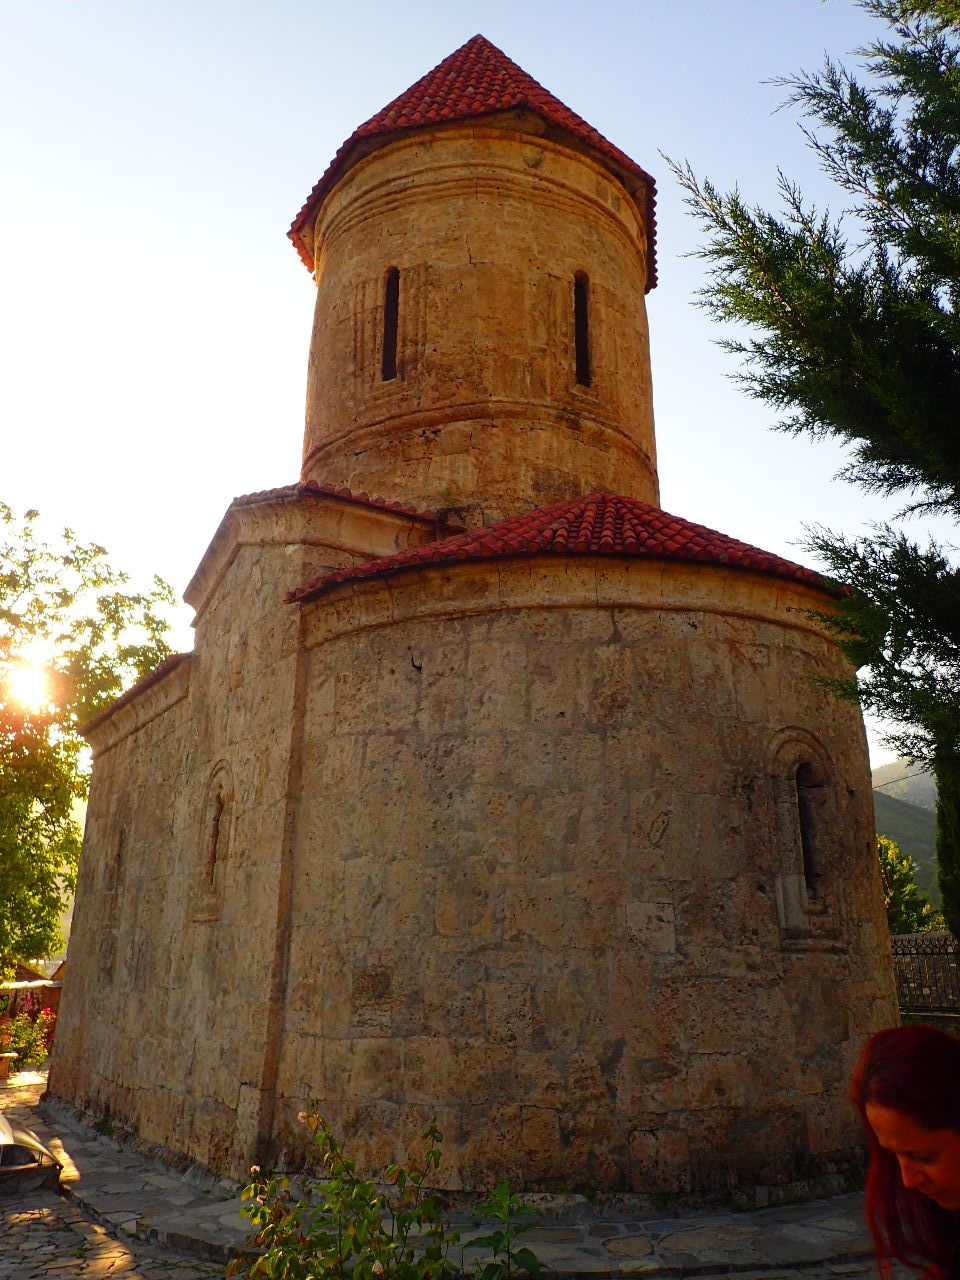 Сладкая сказка востока. Шекинский дворец, албанская церковь Шеки, Азербайджан